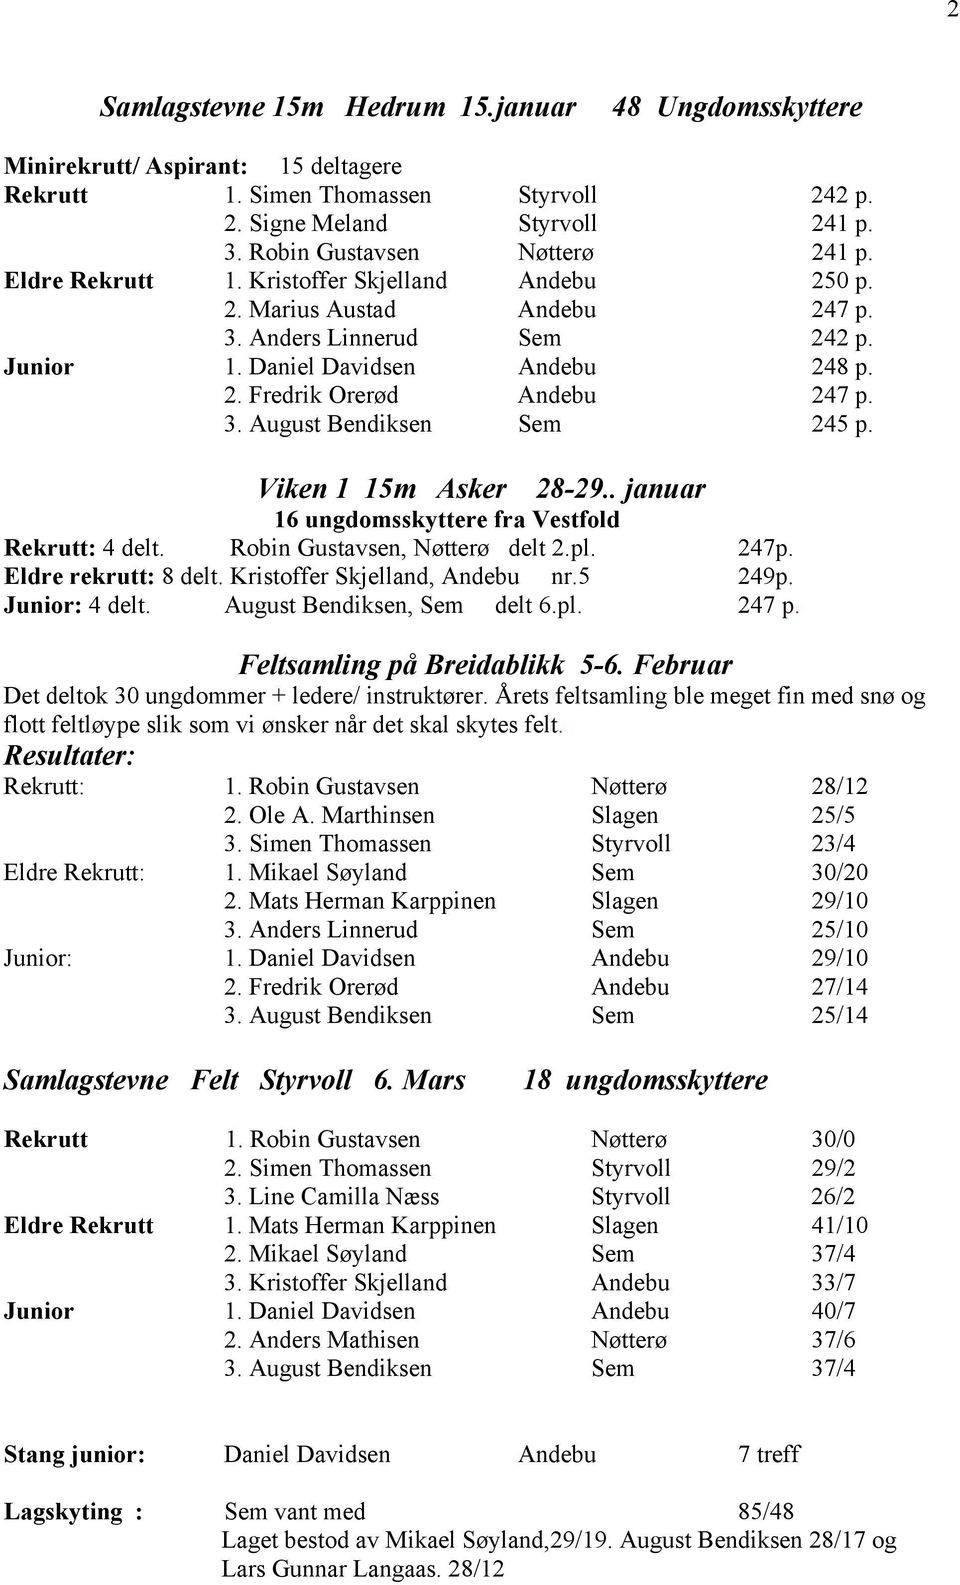 Viken 1 15m Asker 28-29.. januar 16 ungdomsskyttere fra Vestfold Rekrutt: 4 delt. Robin Gustavsen, Nøtterø delt 2.pl. 247p. Eldre rekrutt: 8 delt. Kristoffer Skjelland, Andebu nr.5 249p.